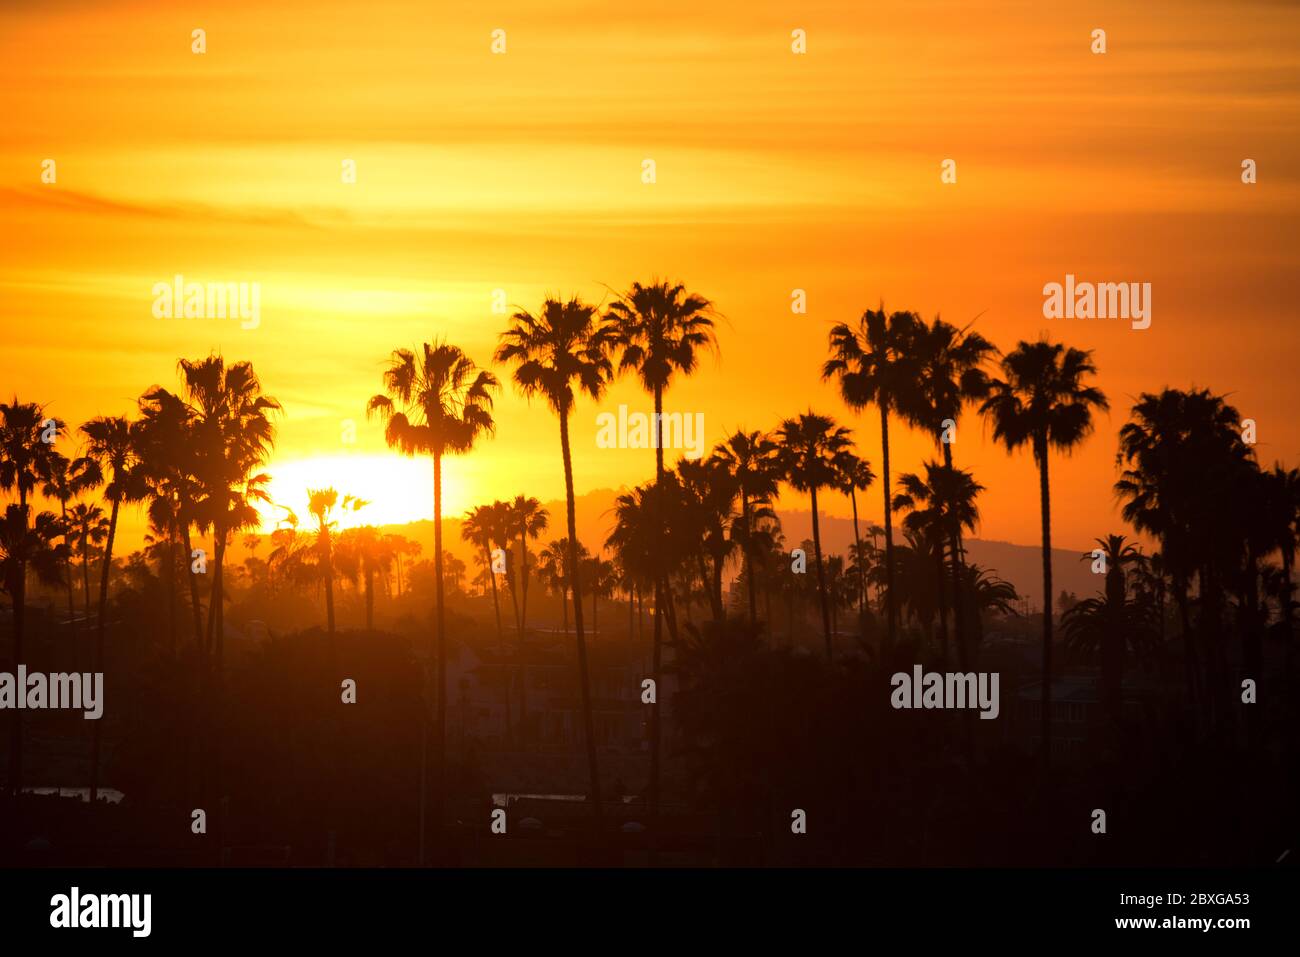 Silueta de palmeras al atardecer, Condado de Orange, California, Estados Unidos Foto de stock